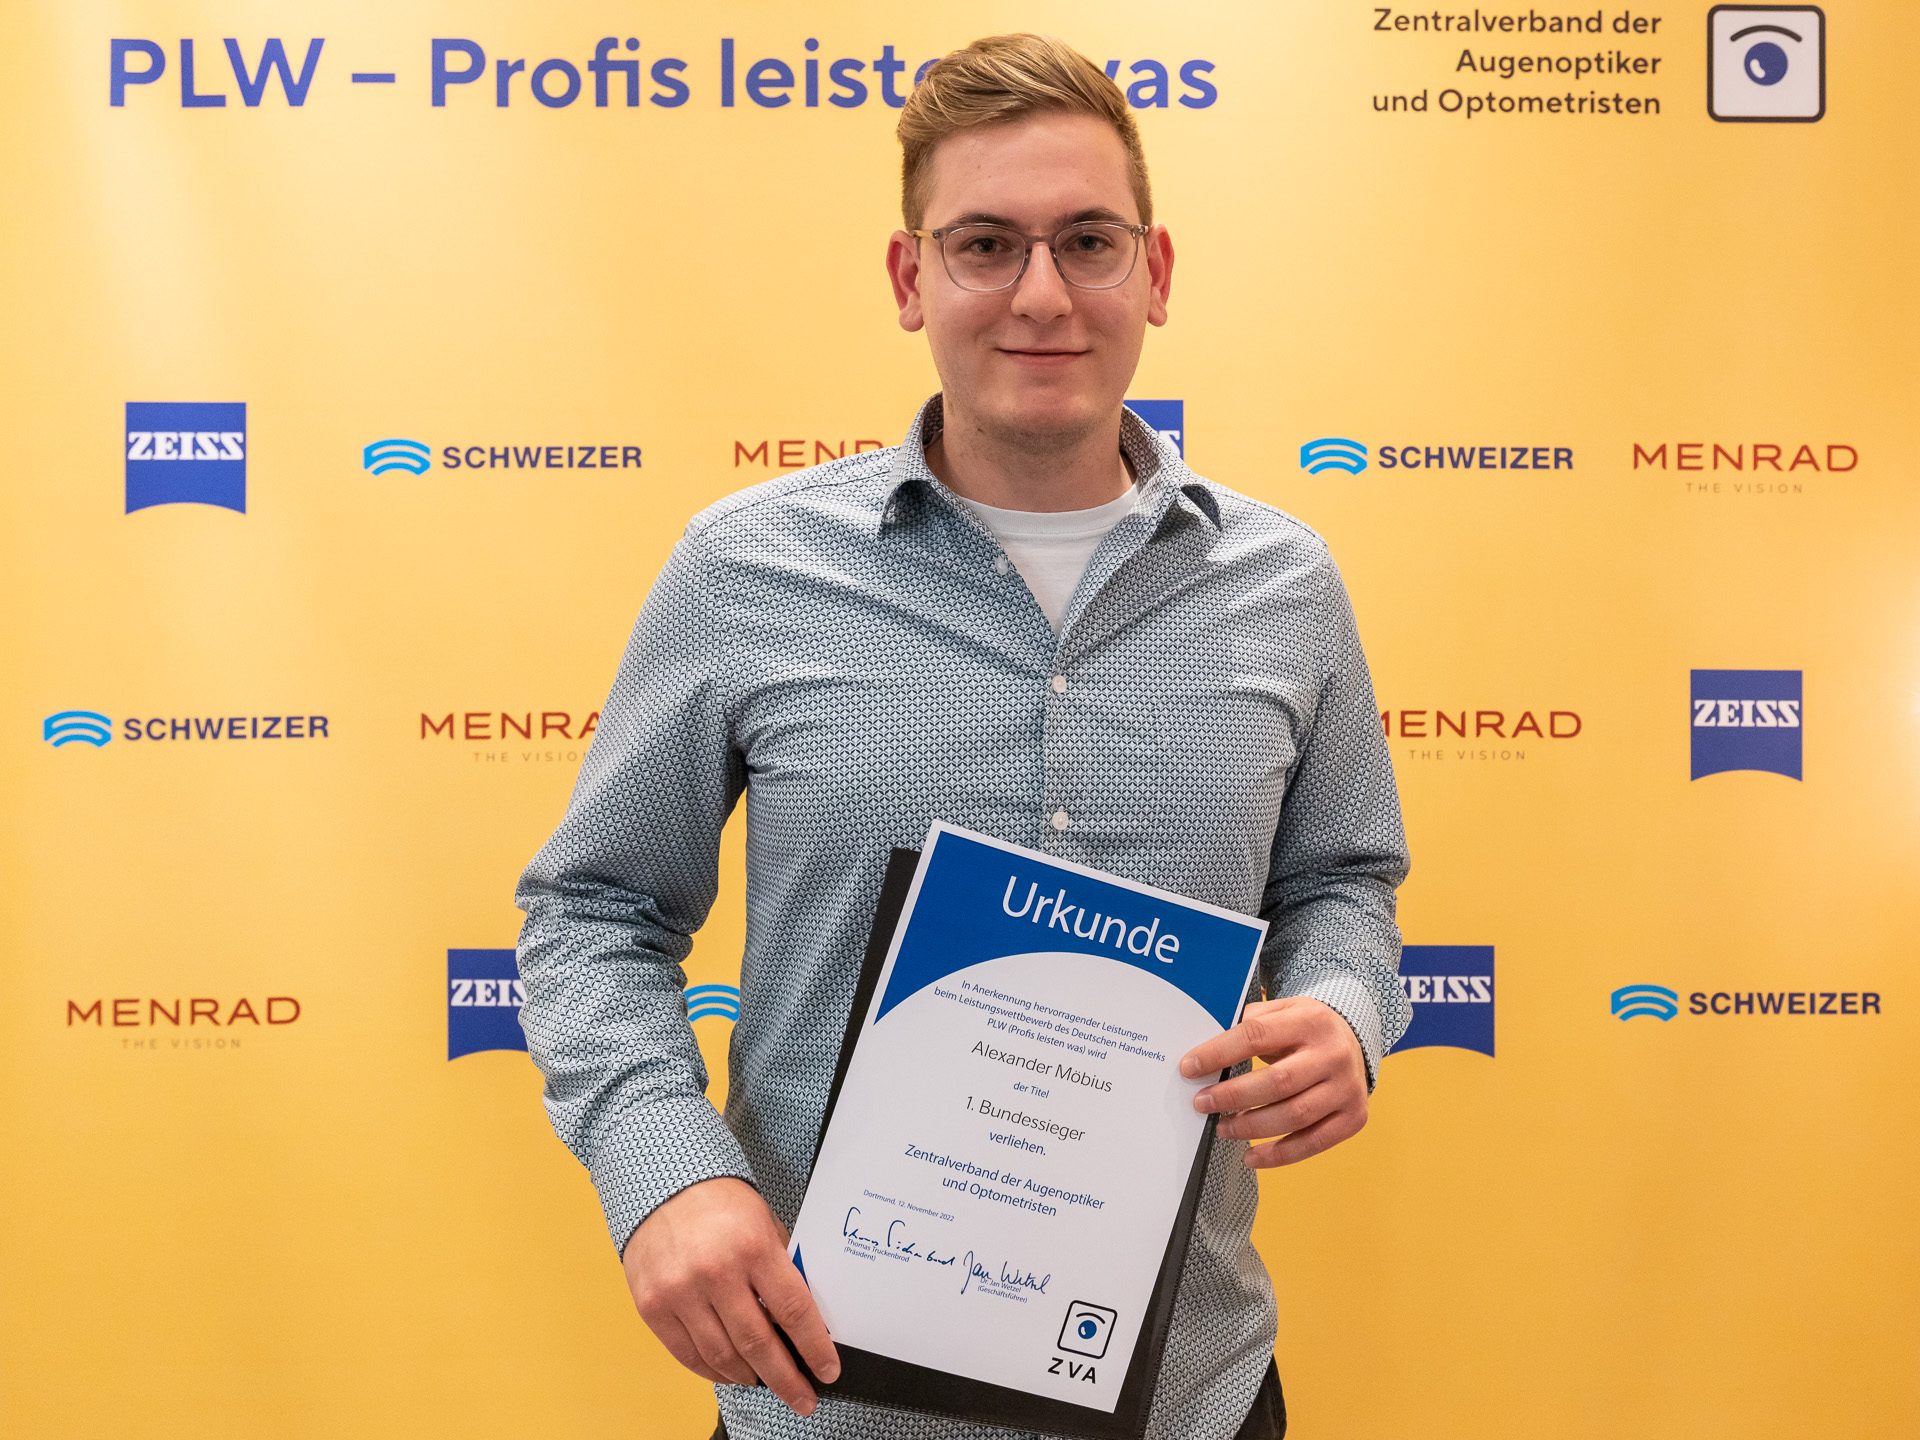 Alexander Möbius, 1. Bundessieger und Gewinner des Sonderpreises „Gleitsichtexperte“